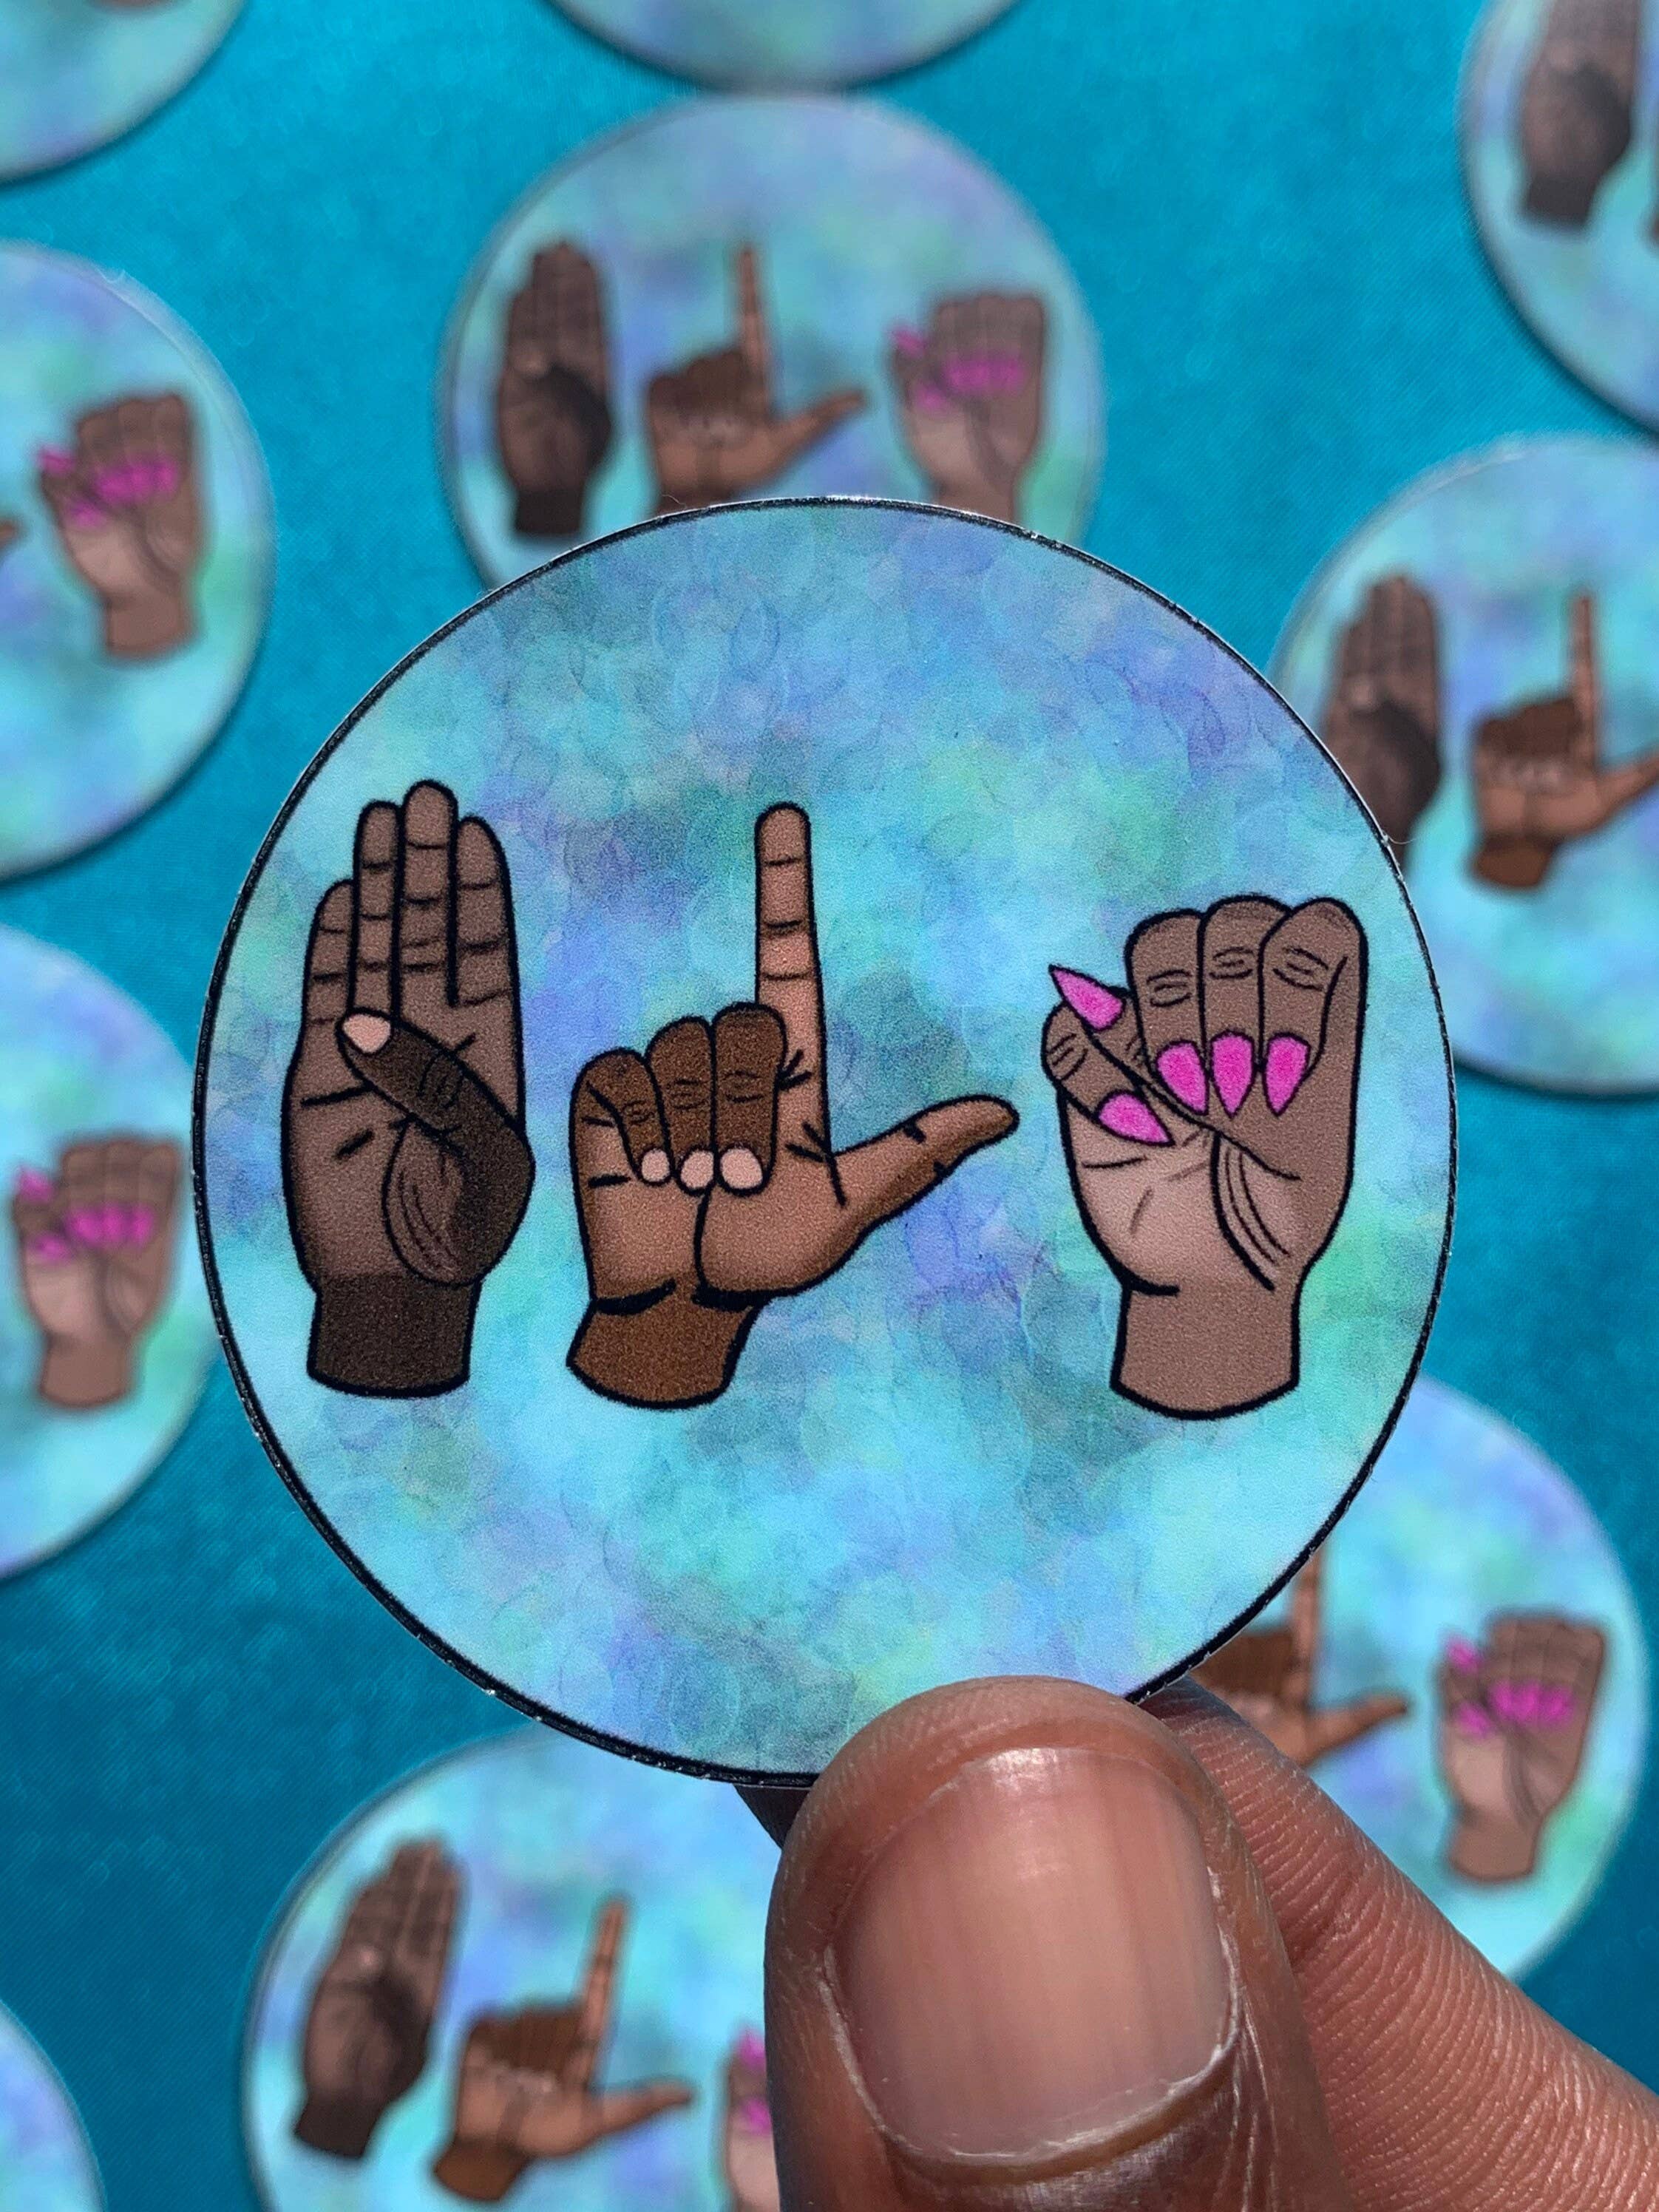 Blm Sign Language Sticker